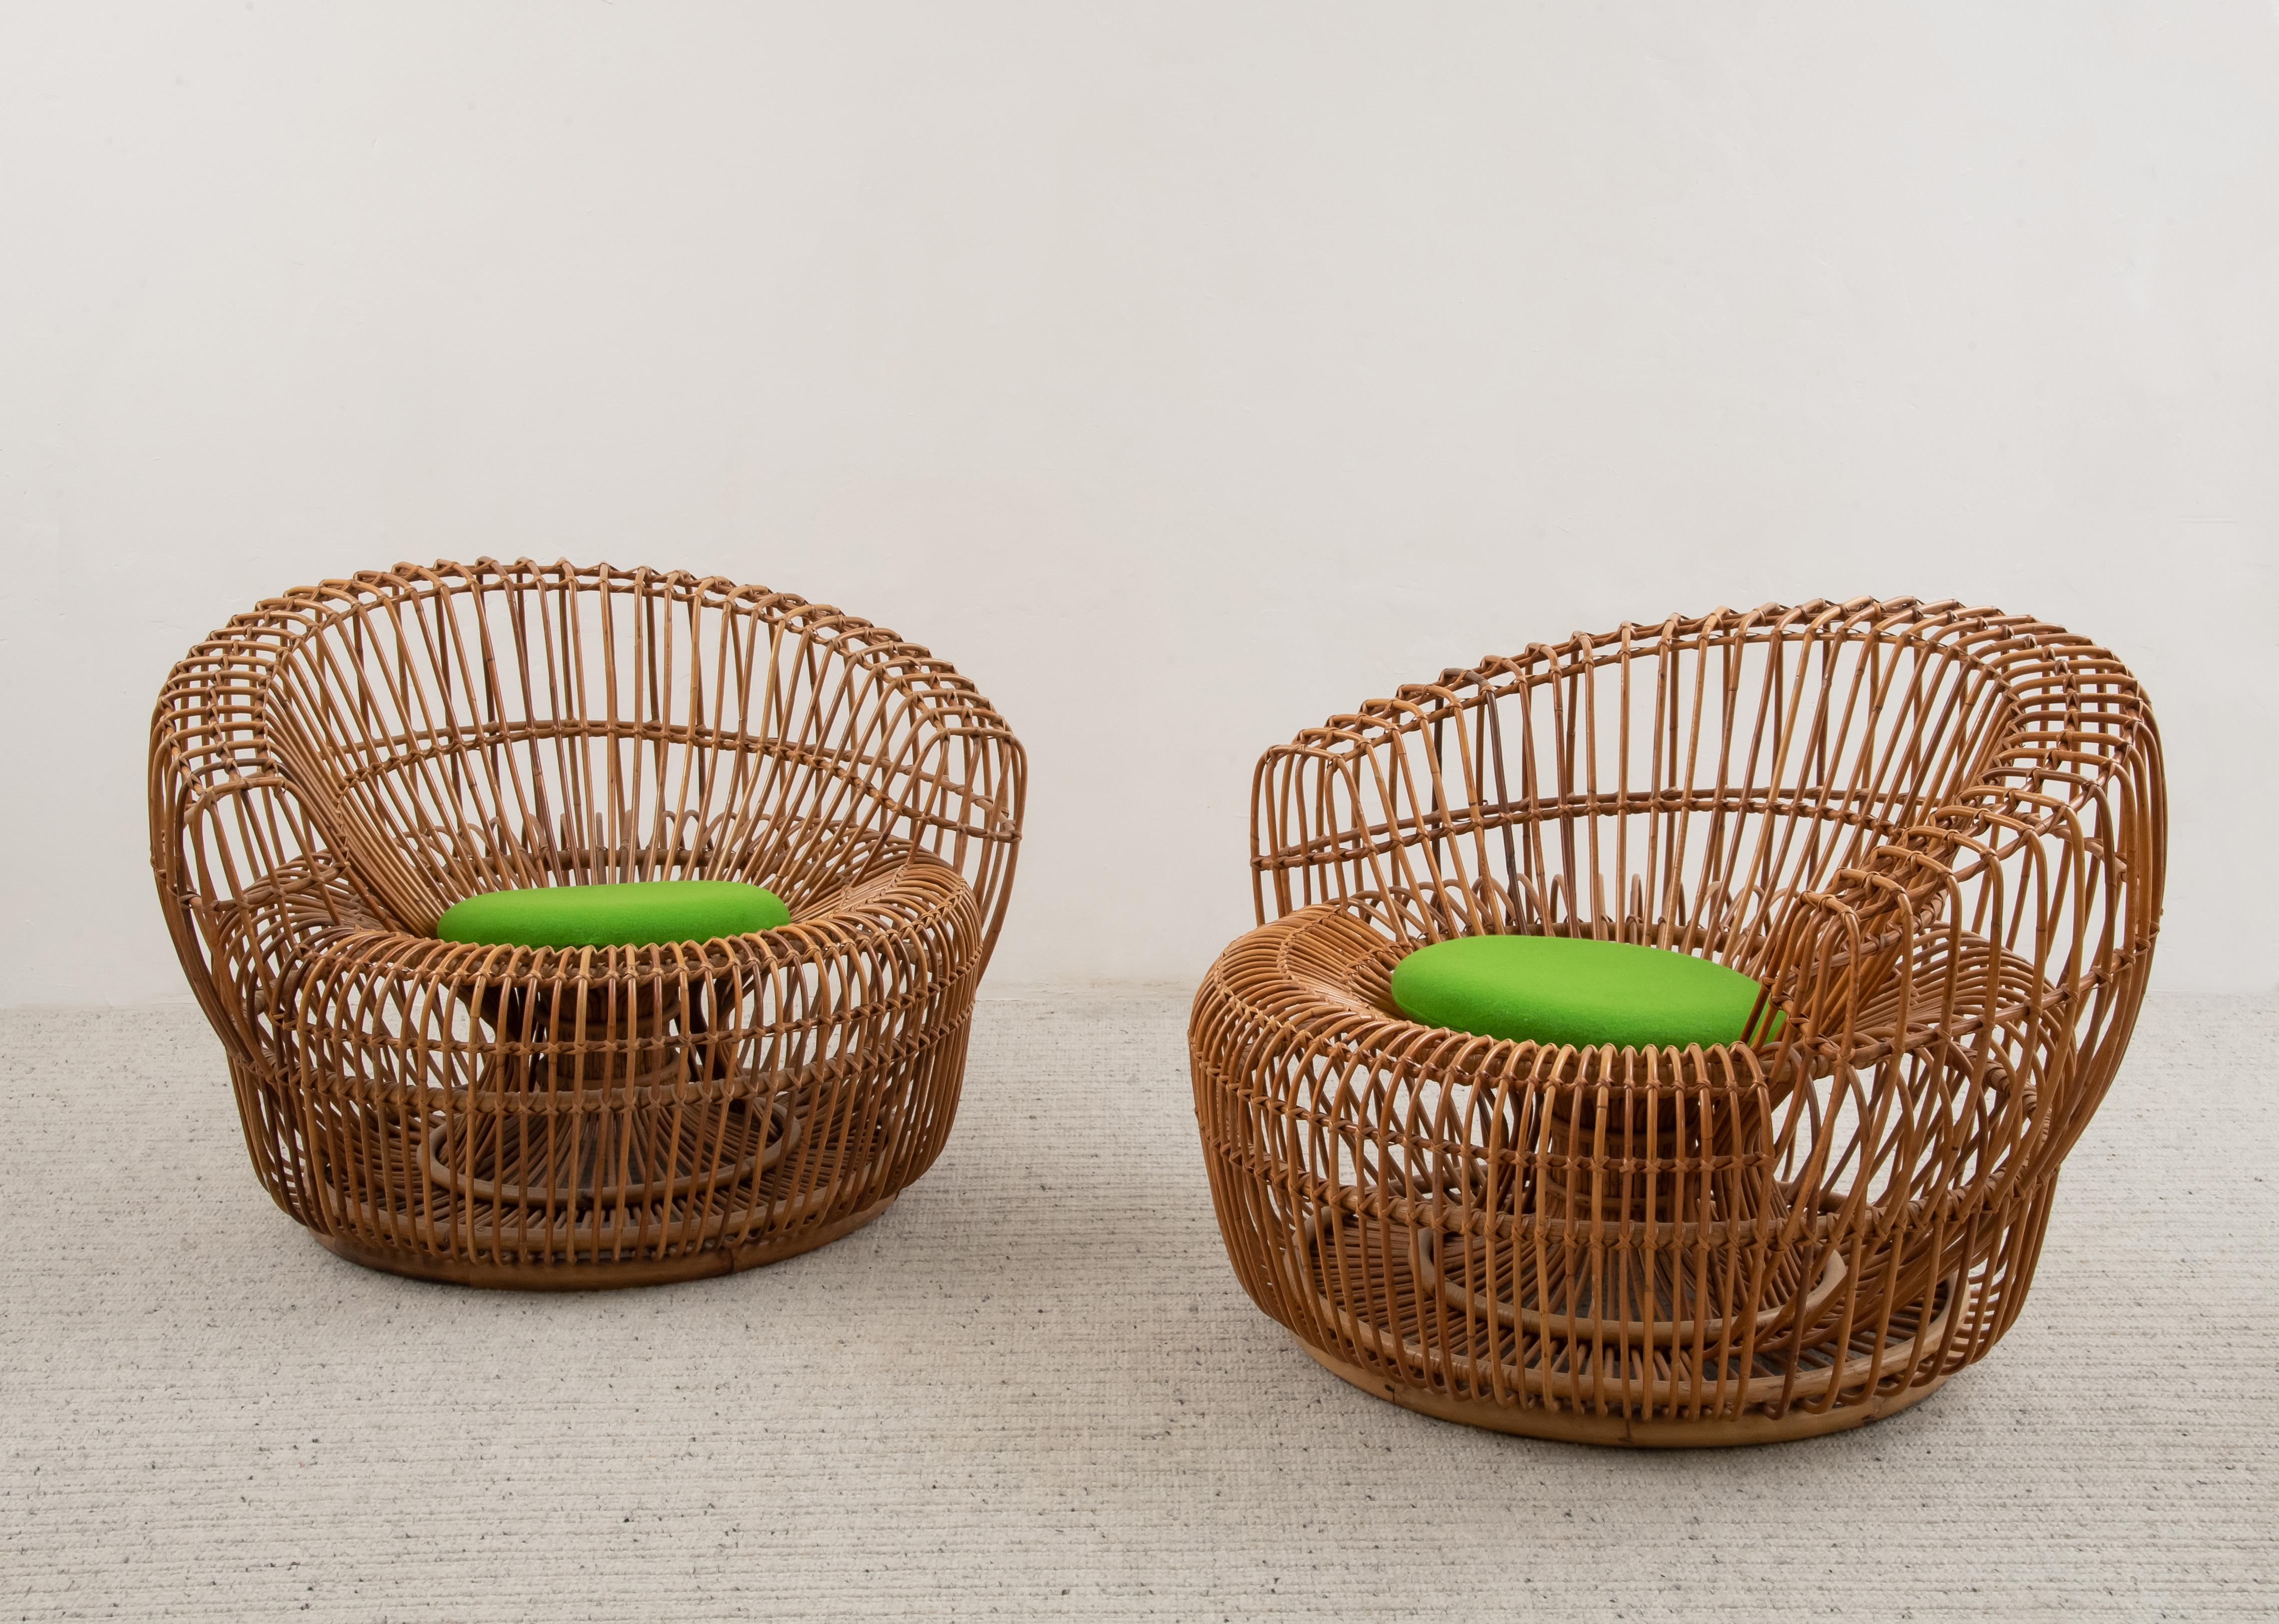 italienisches Design
Paar Rattan-Sessel, um 1950
MATERIAL: Handgeflochtenes Rattan
Abmessungen: H 70 x 100 x 93 cm
Dieses elegante Paar Rattan-Korbsessel ist ein gekonntes Beispiel für italienische Handwerkskunst und vereint ein modernes